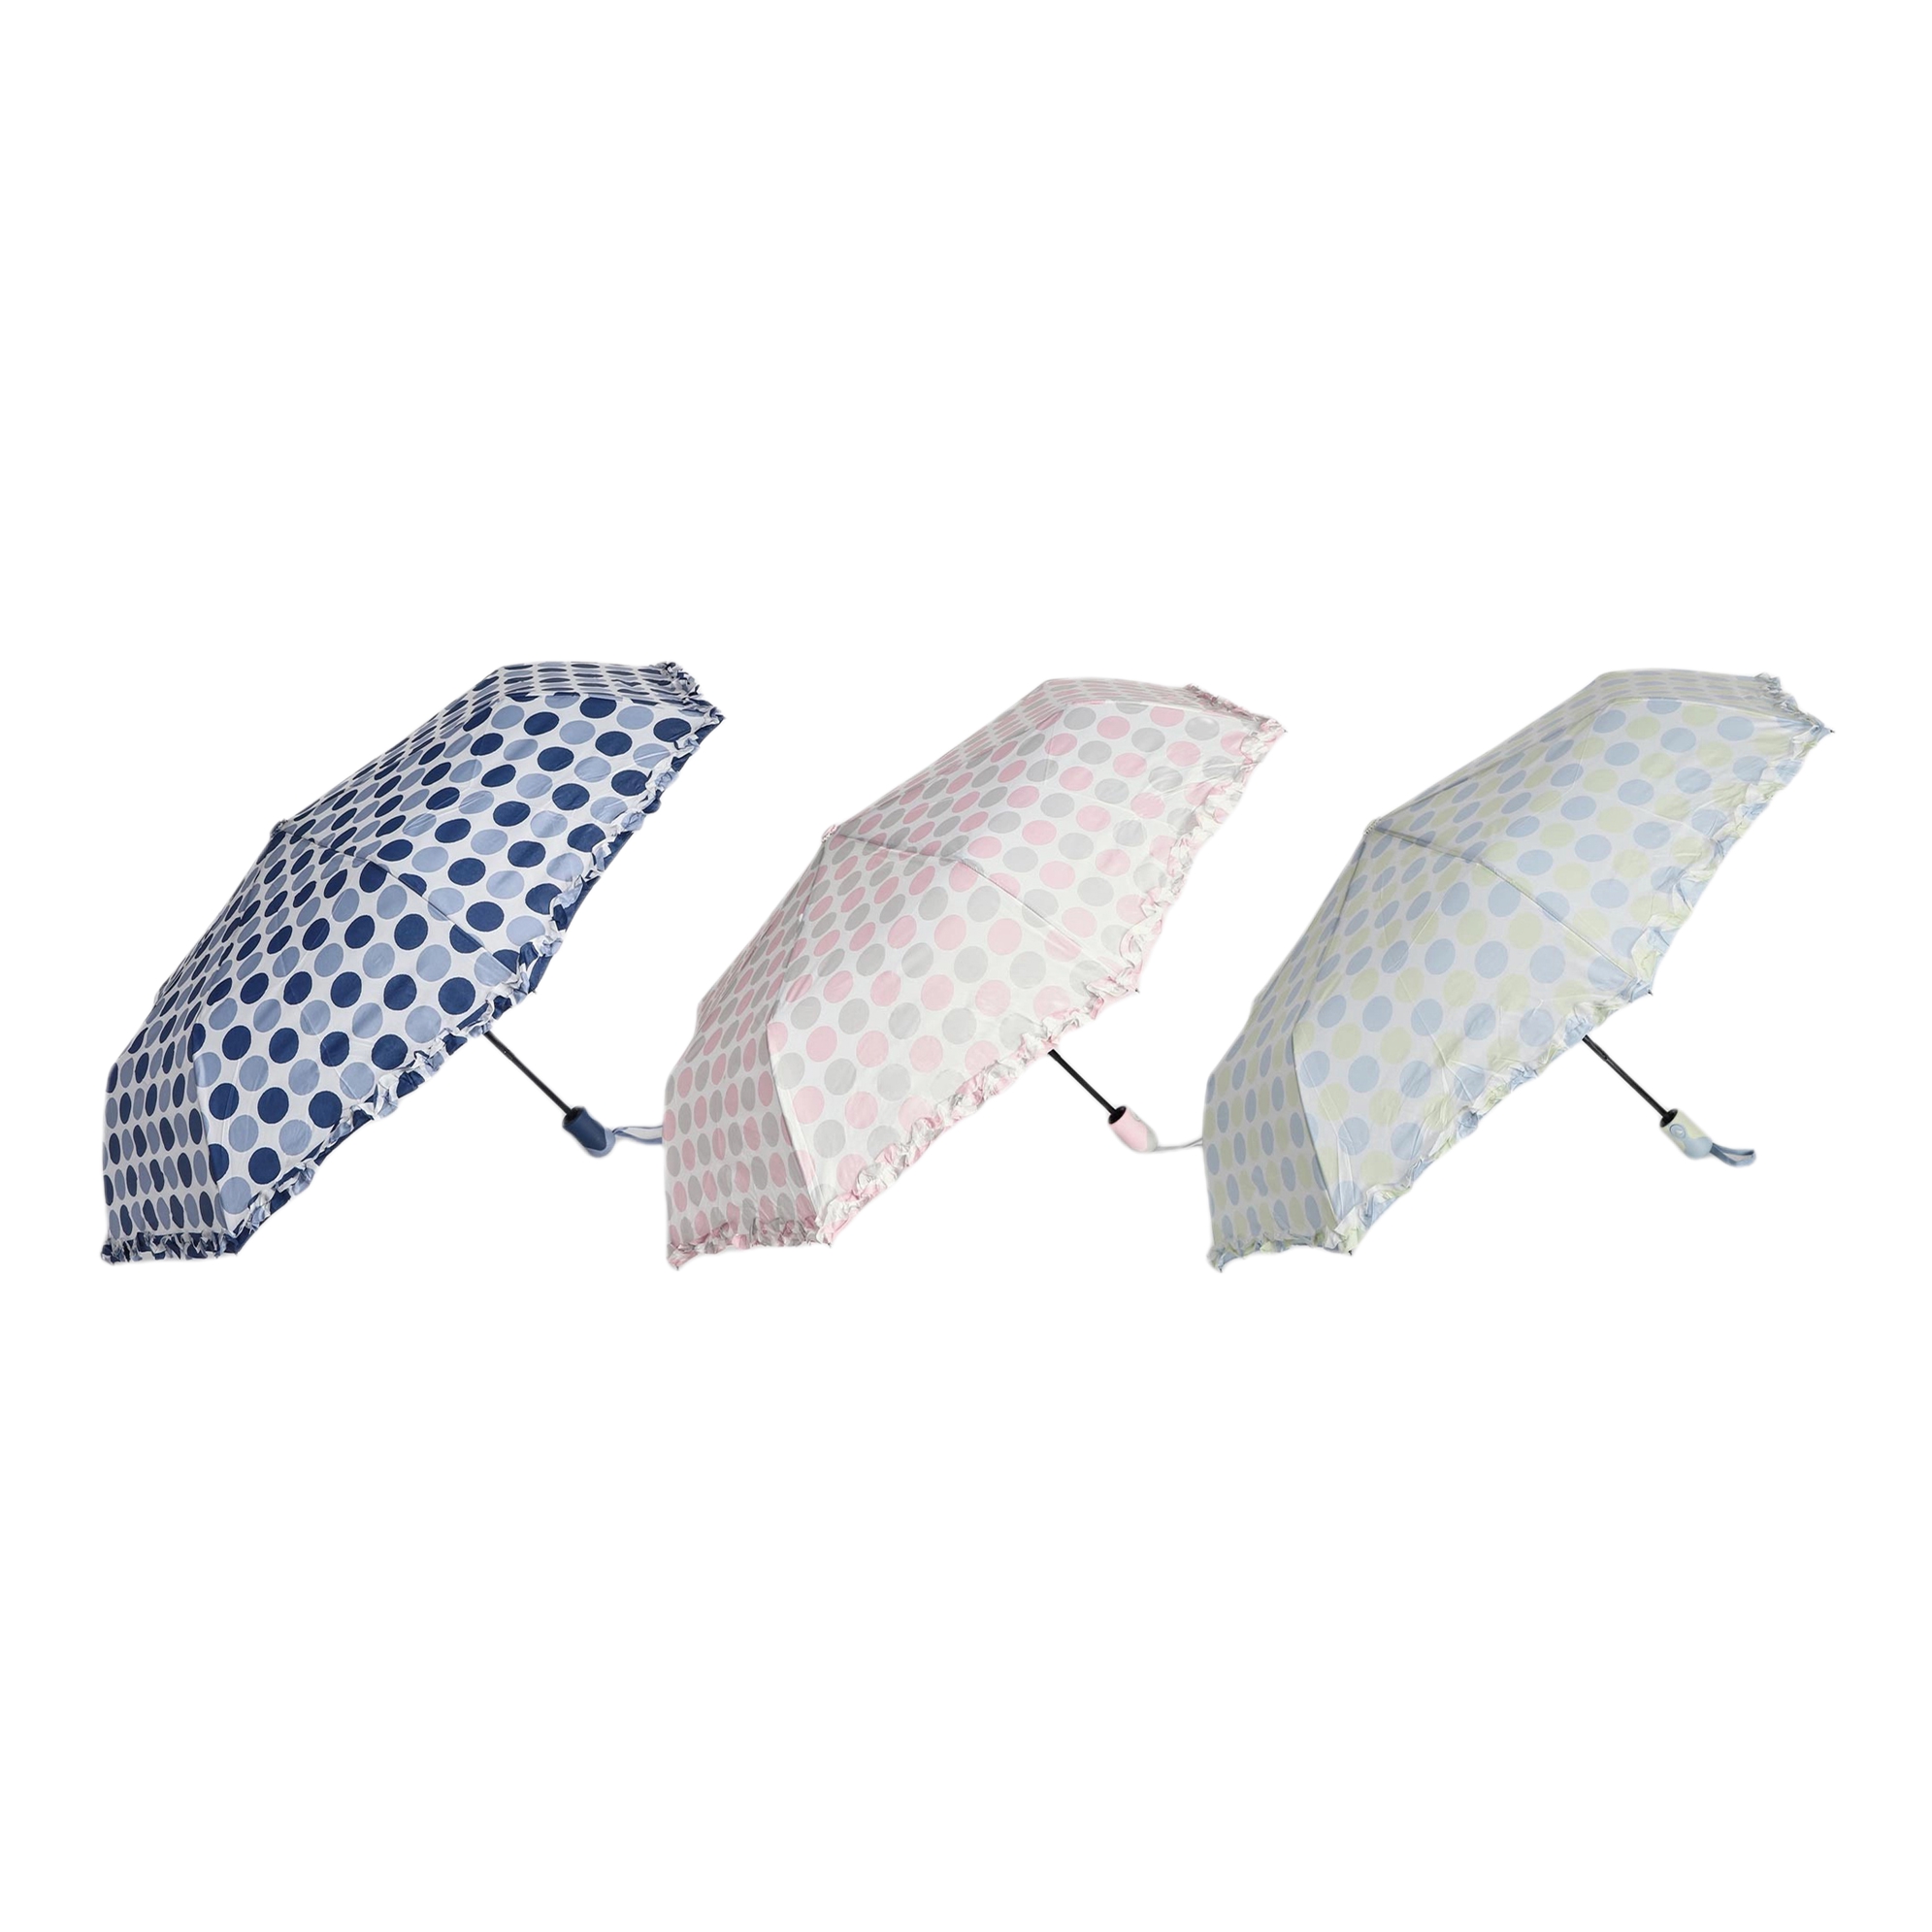 Зонт складной женский полуавтоматический  Jiemailong Горошек, разноцветный